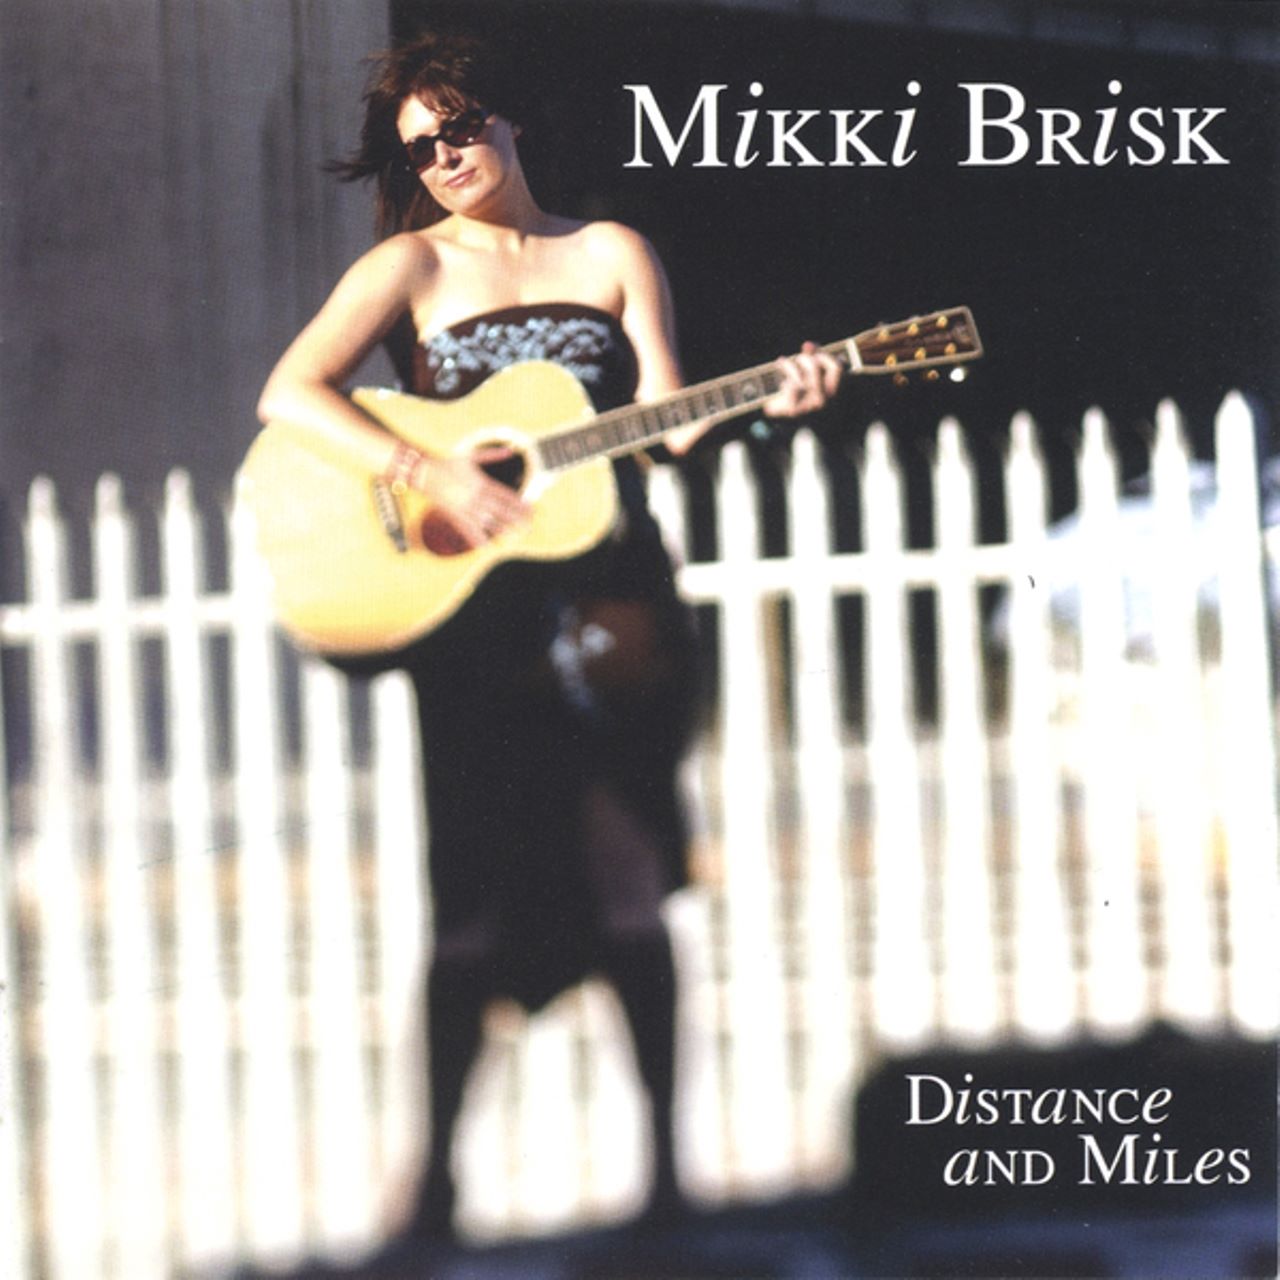 Mikki Brisk - Distance And Miles cover album